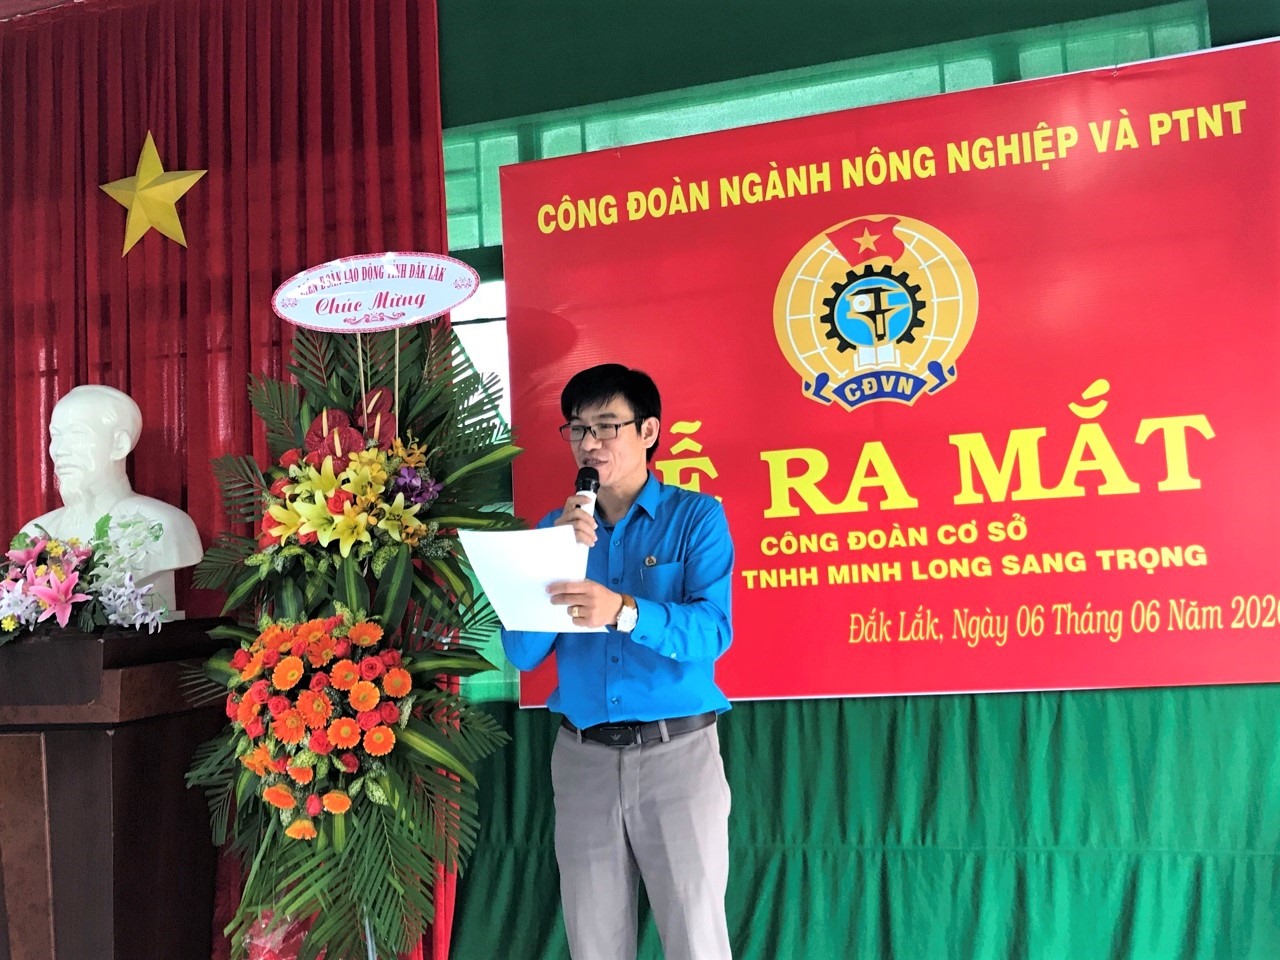 Ông Lê Anh Hùng - Chủ tịch Công đoàn ngành NNPTNT Đắk Lắk phát biểu tại buổi lễ. Ảnh: Xung trin